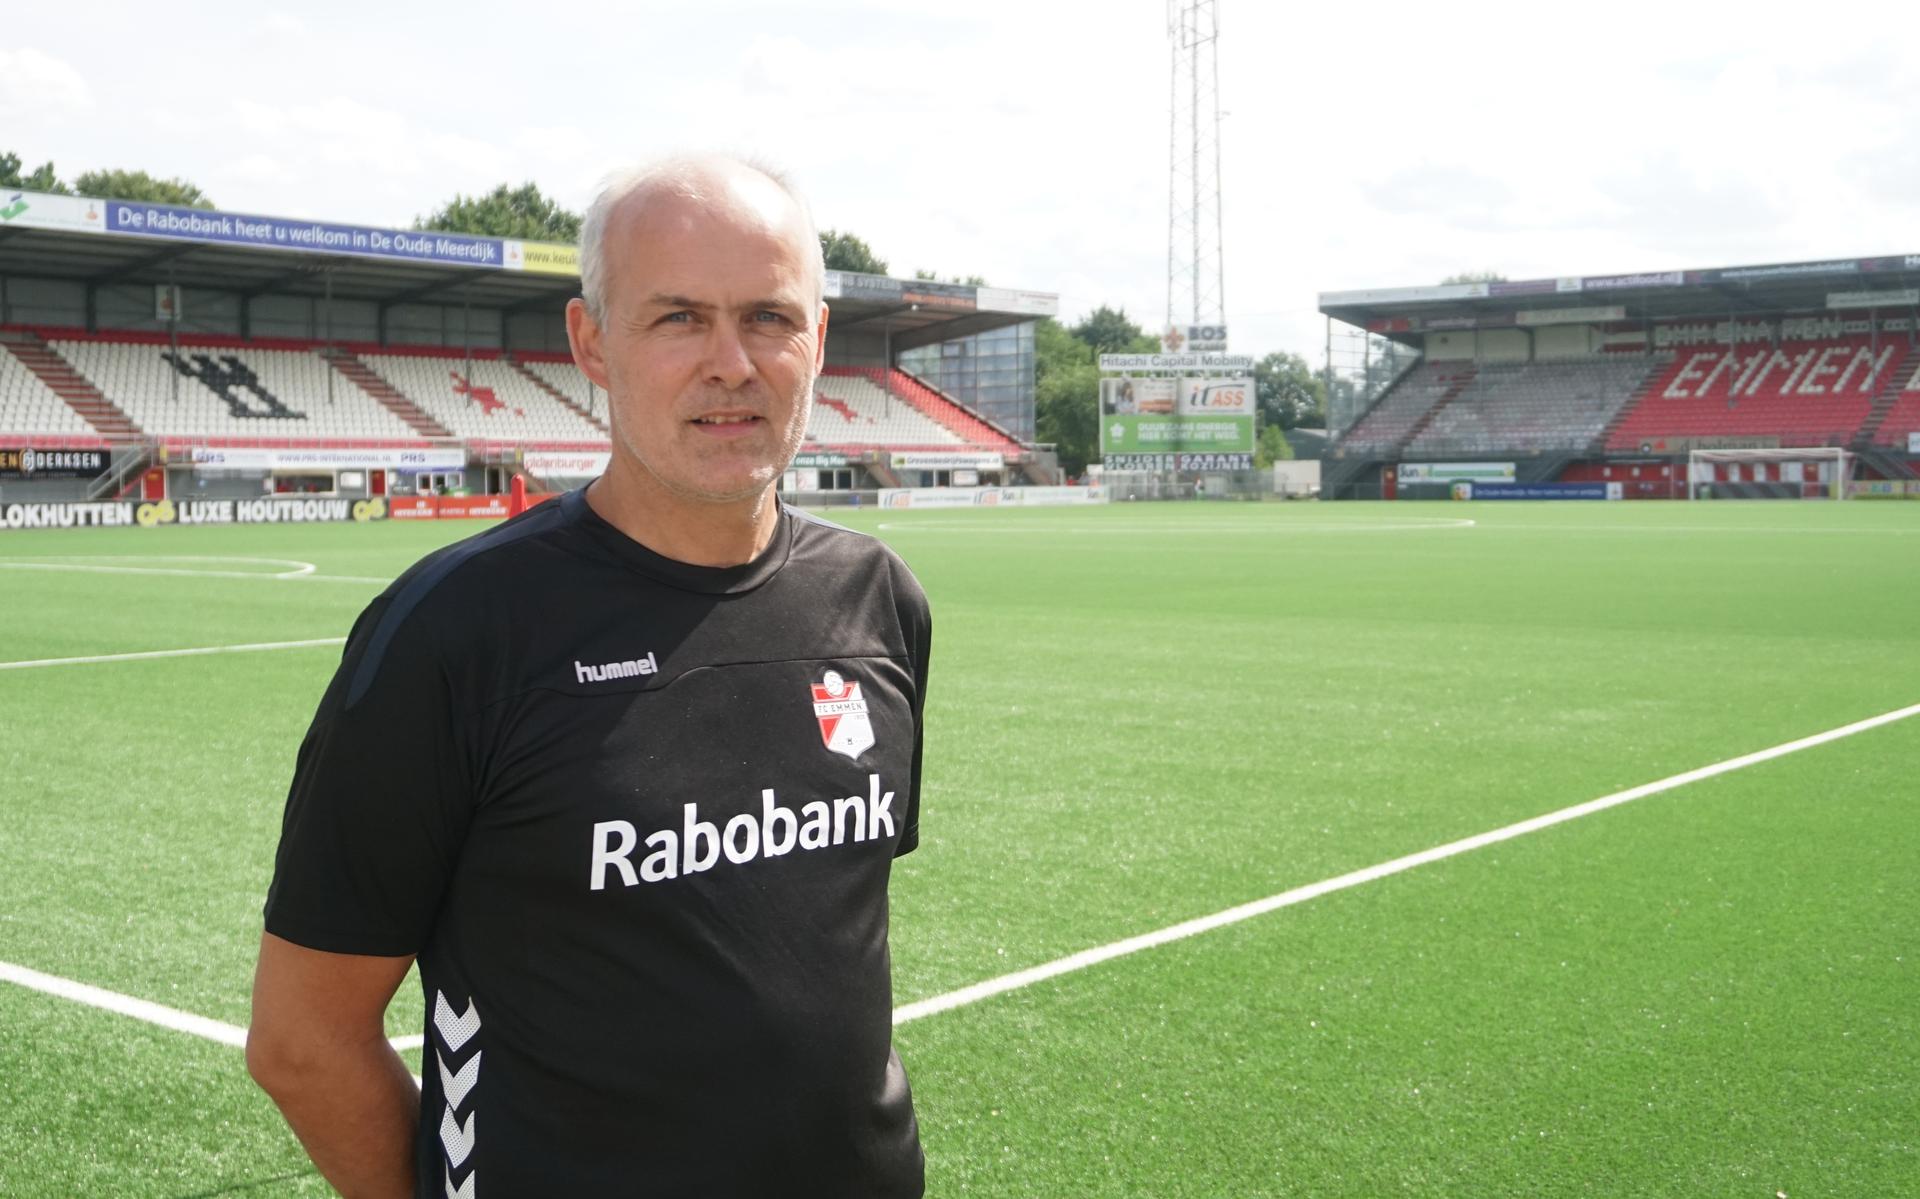 René Grummel in het shirt van FC Emmen, de club die hij na dit seizoen verlaat. Nico Haak wordt zijn opvolger.